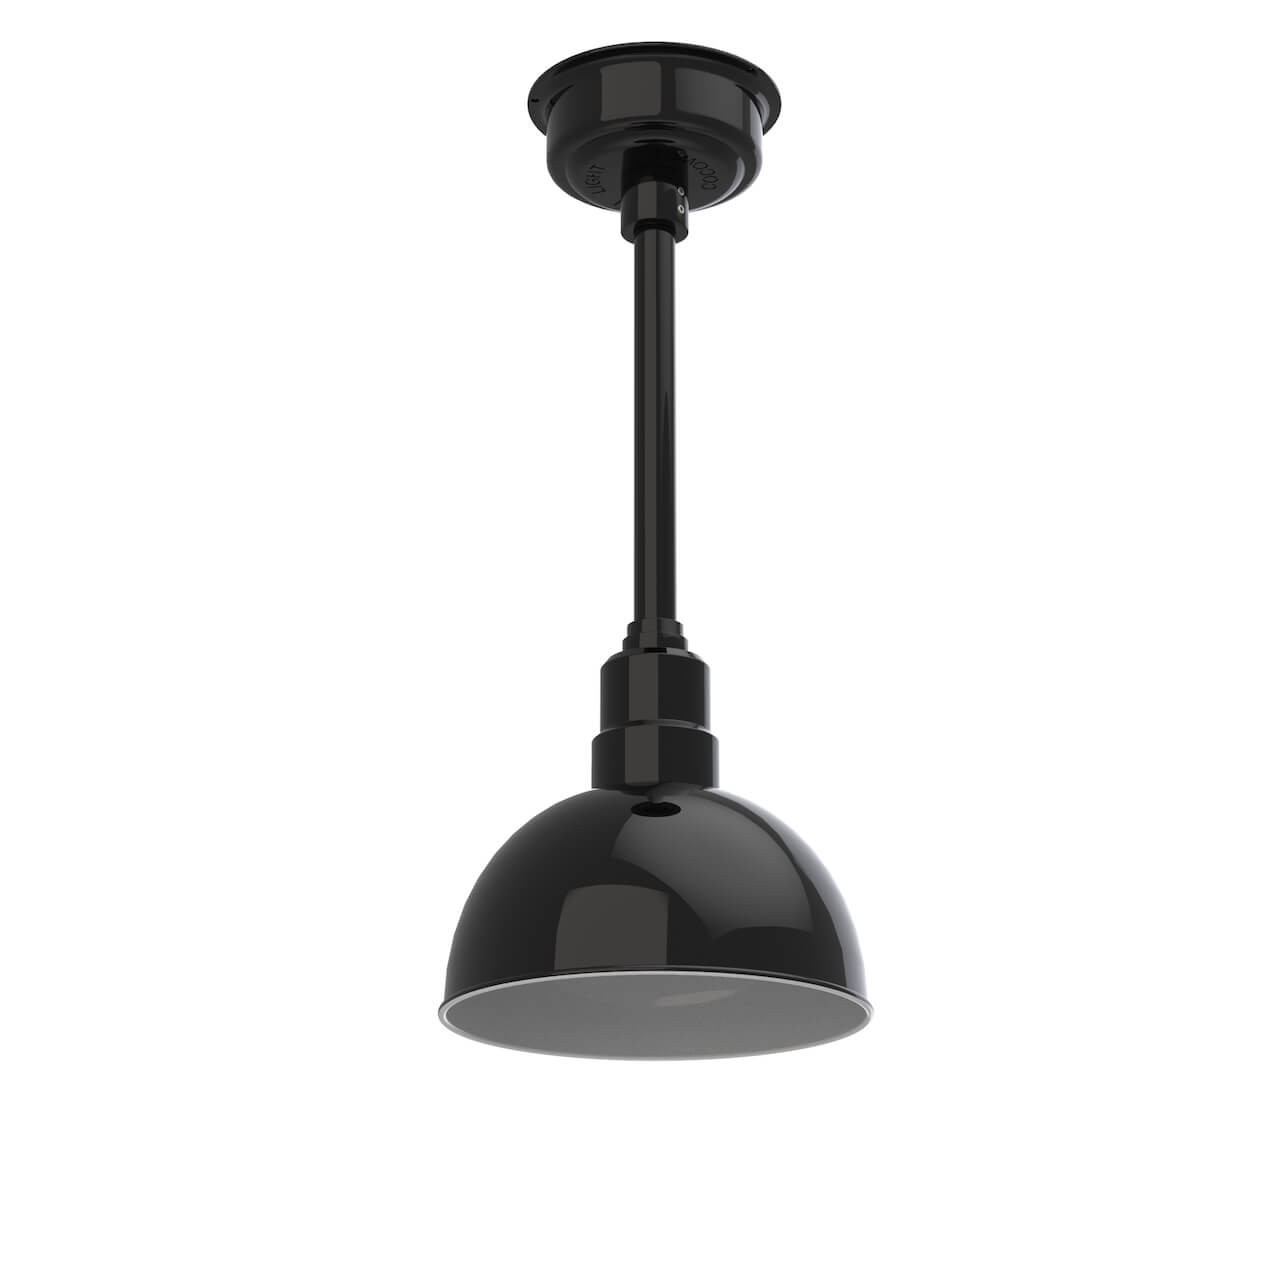 Boden Bar Ceiling Pendant Light - Black Chrome - Lighting Direct